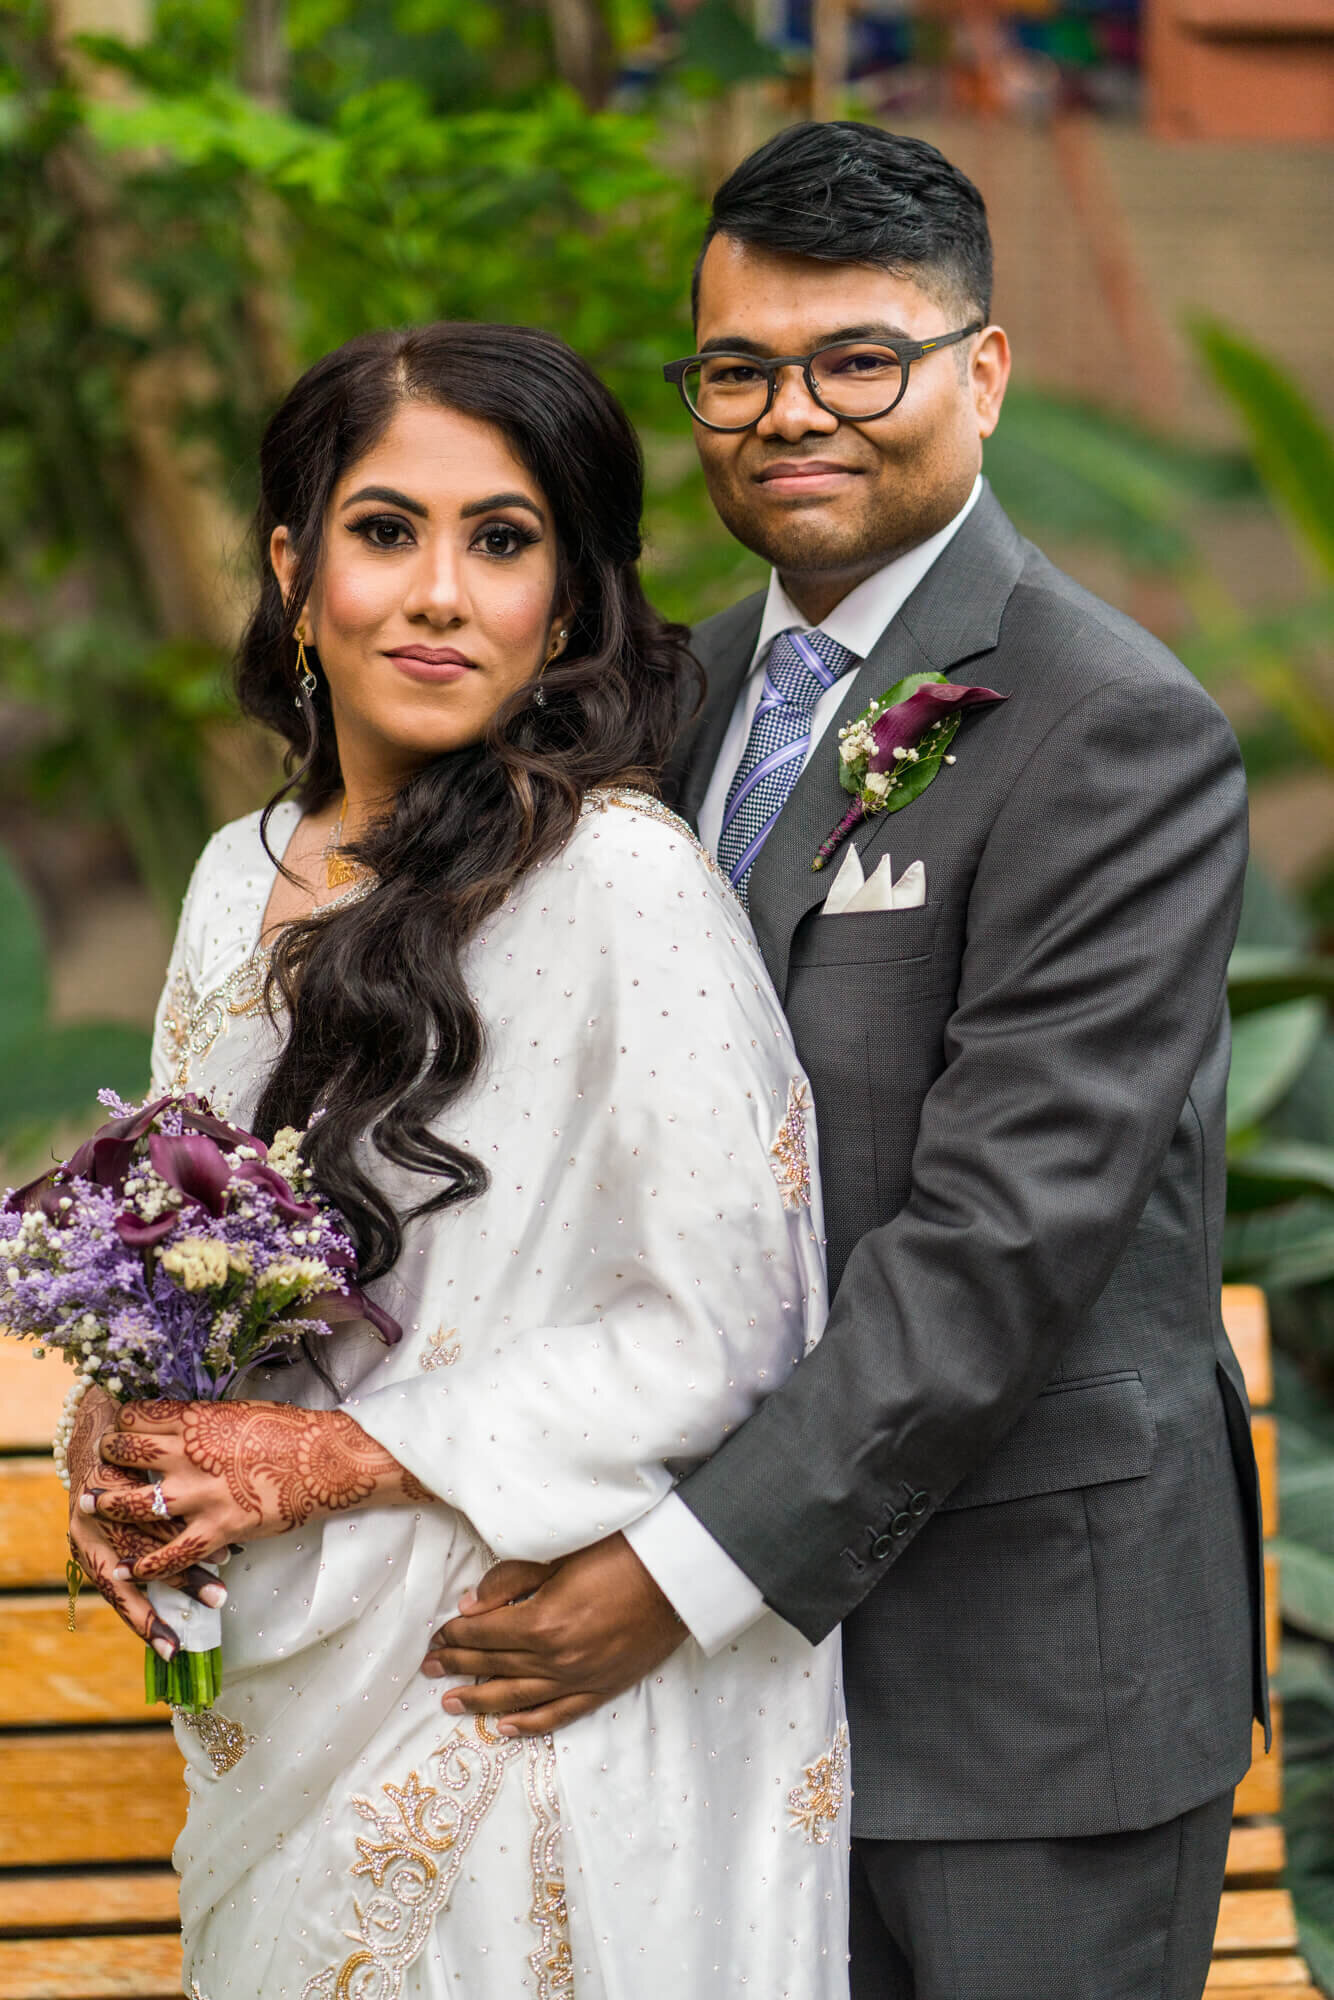 East Indian Wedding - Edmonton Wedding Photographer - Bride and Groom